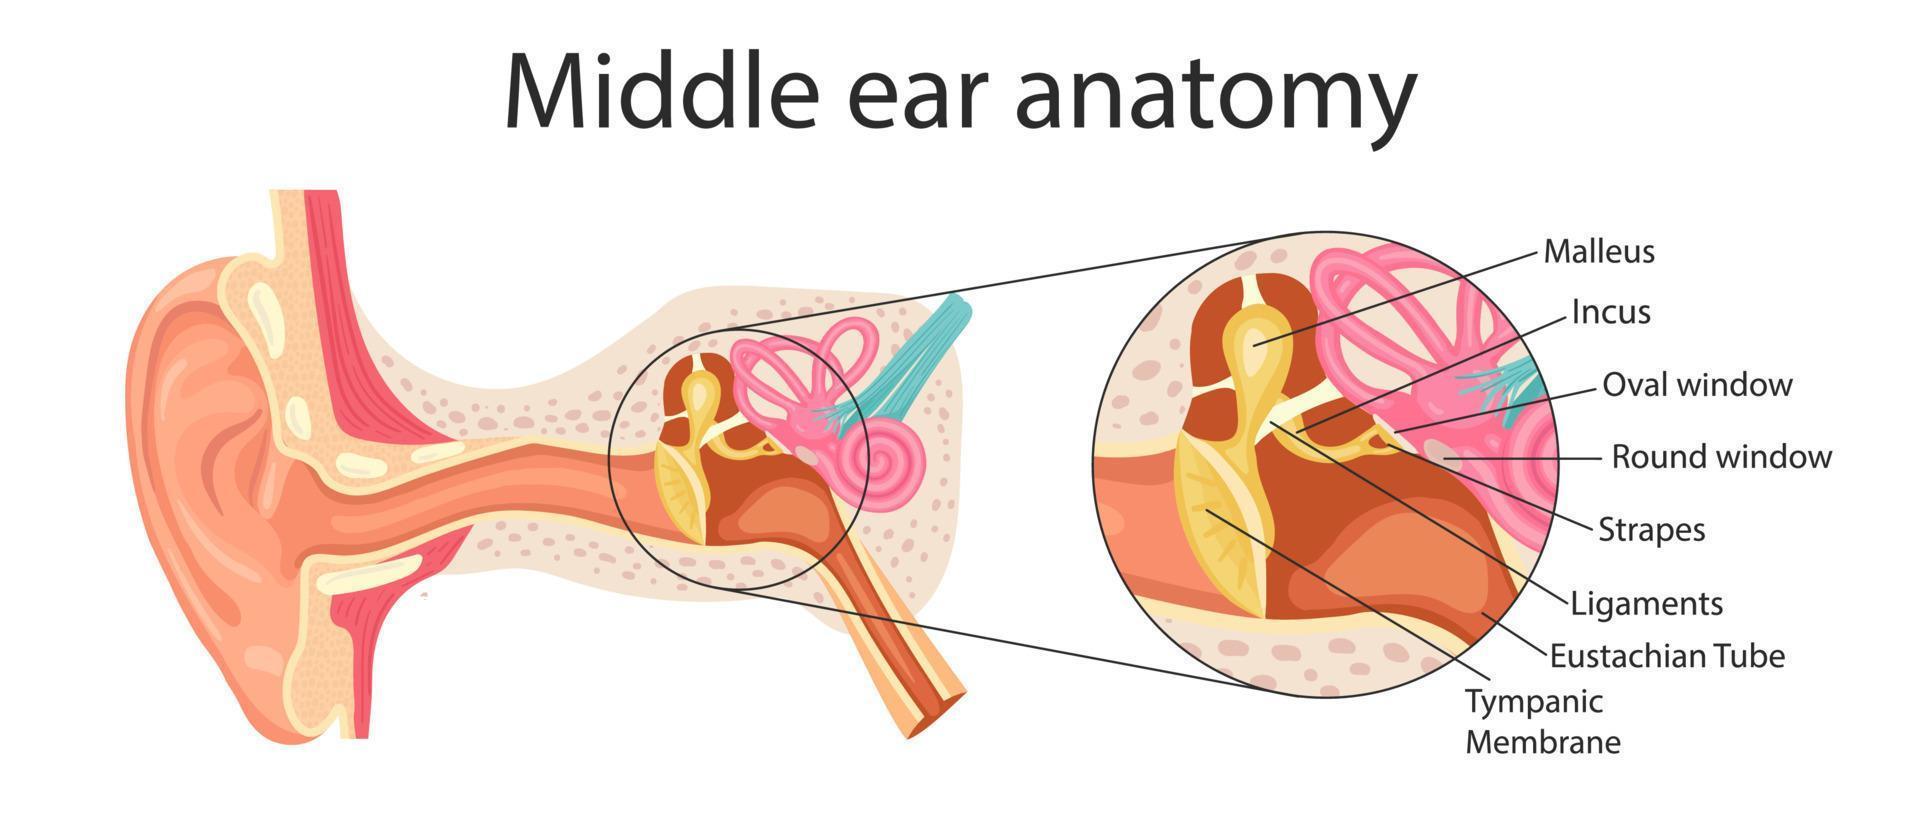 anatomie de l'oreille moyenne. illustration détaillée à des fins éducatives, médicales, biologiques et scientifiques. vecteur